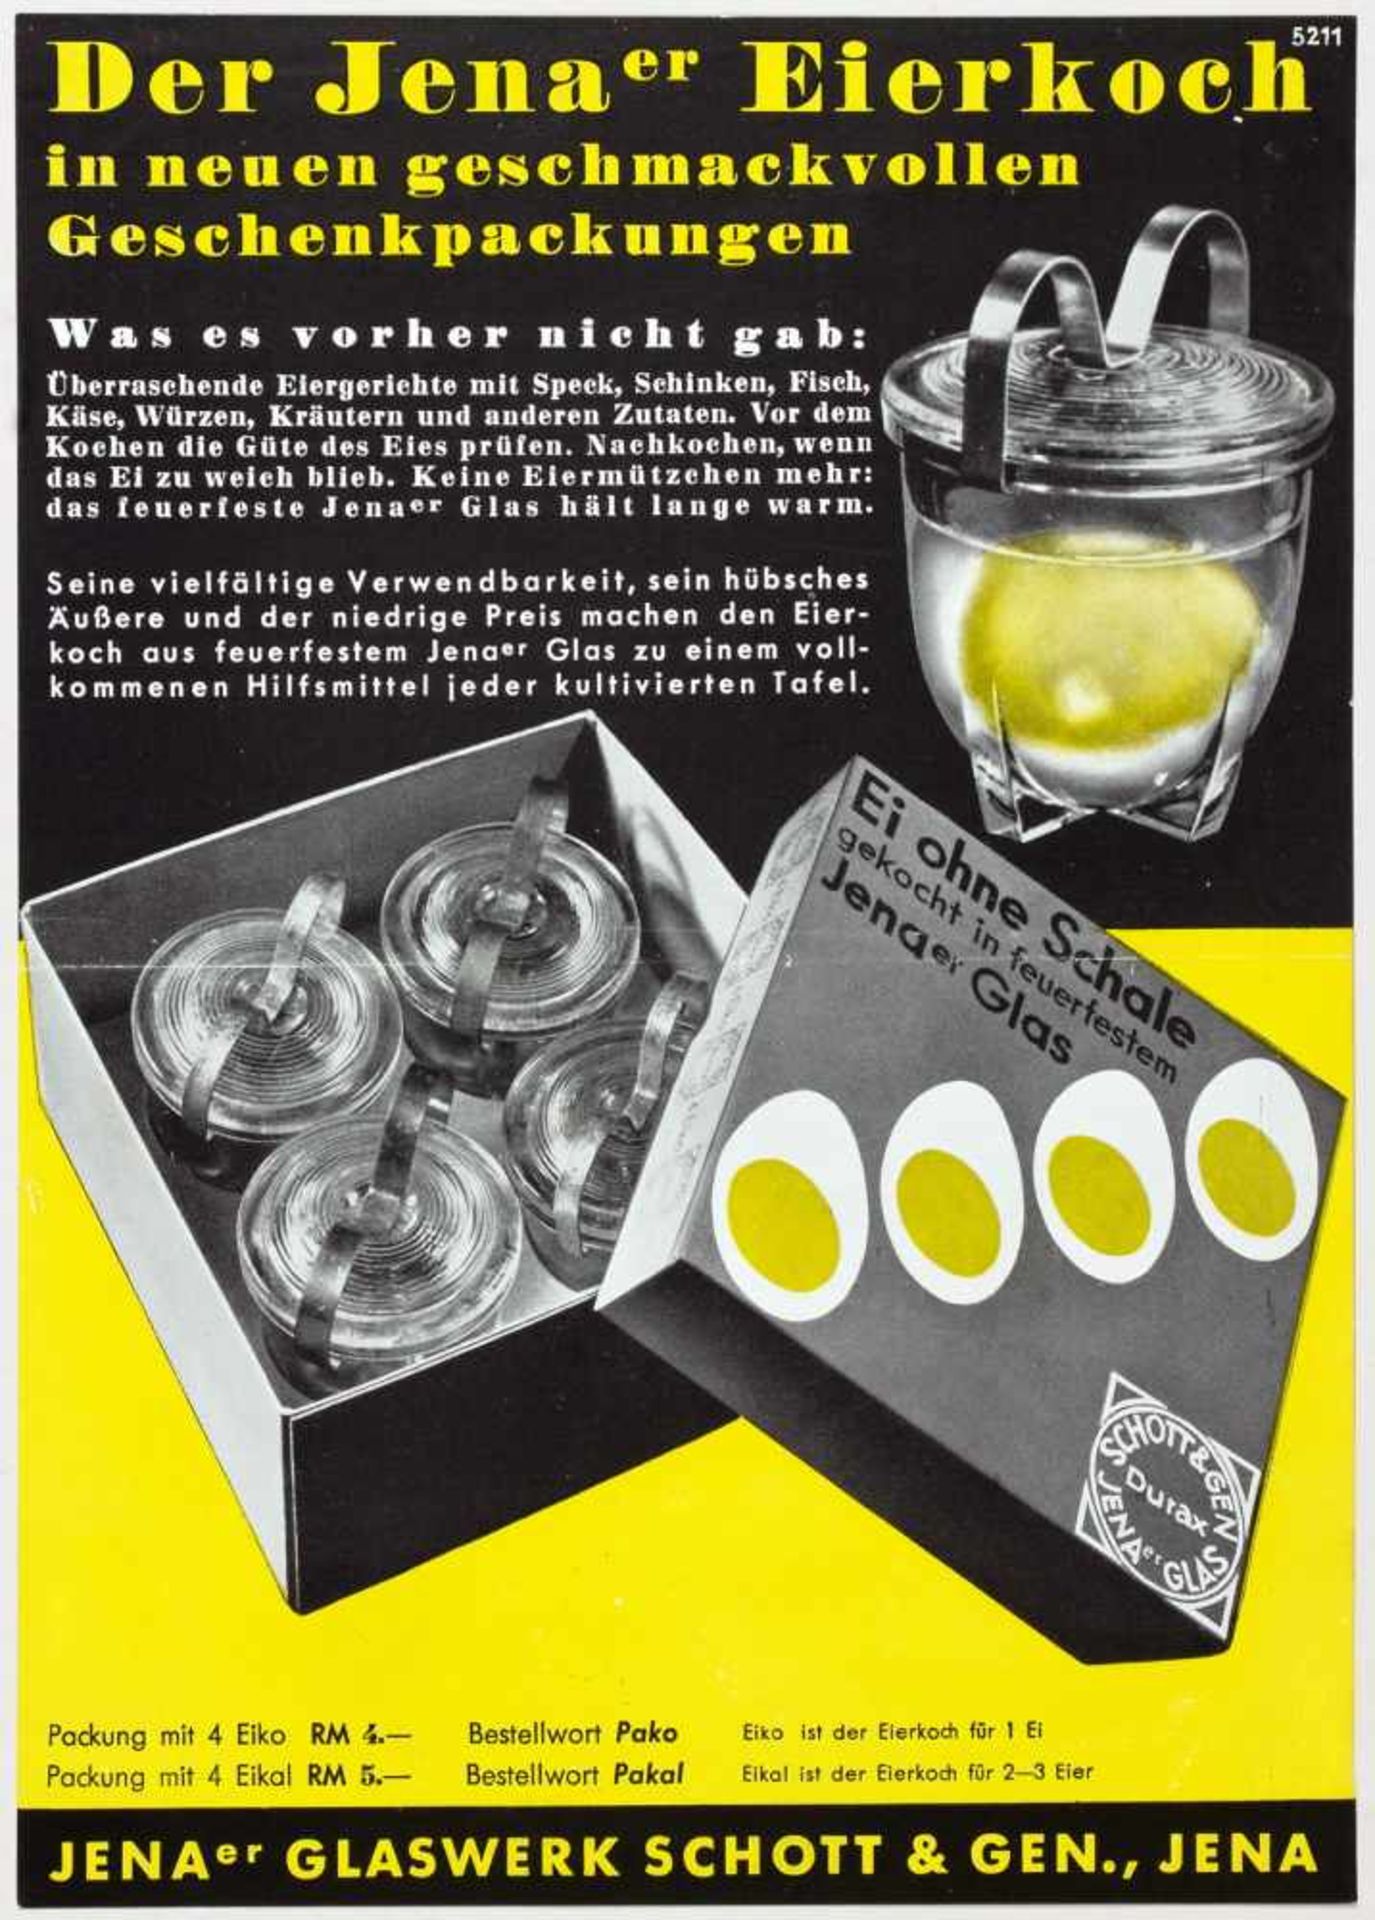 Laszlo Moholy-Nagy - Fünf Werbebroschüren und -flyer für das Jenaer Glaswerk Schott & Gen. Jena um - Image 3 of 5